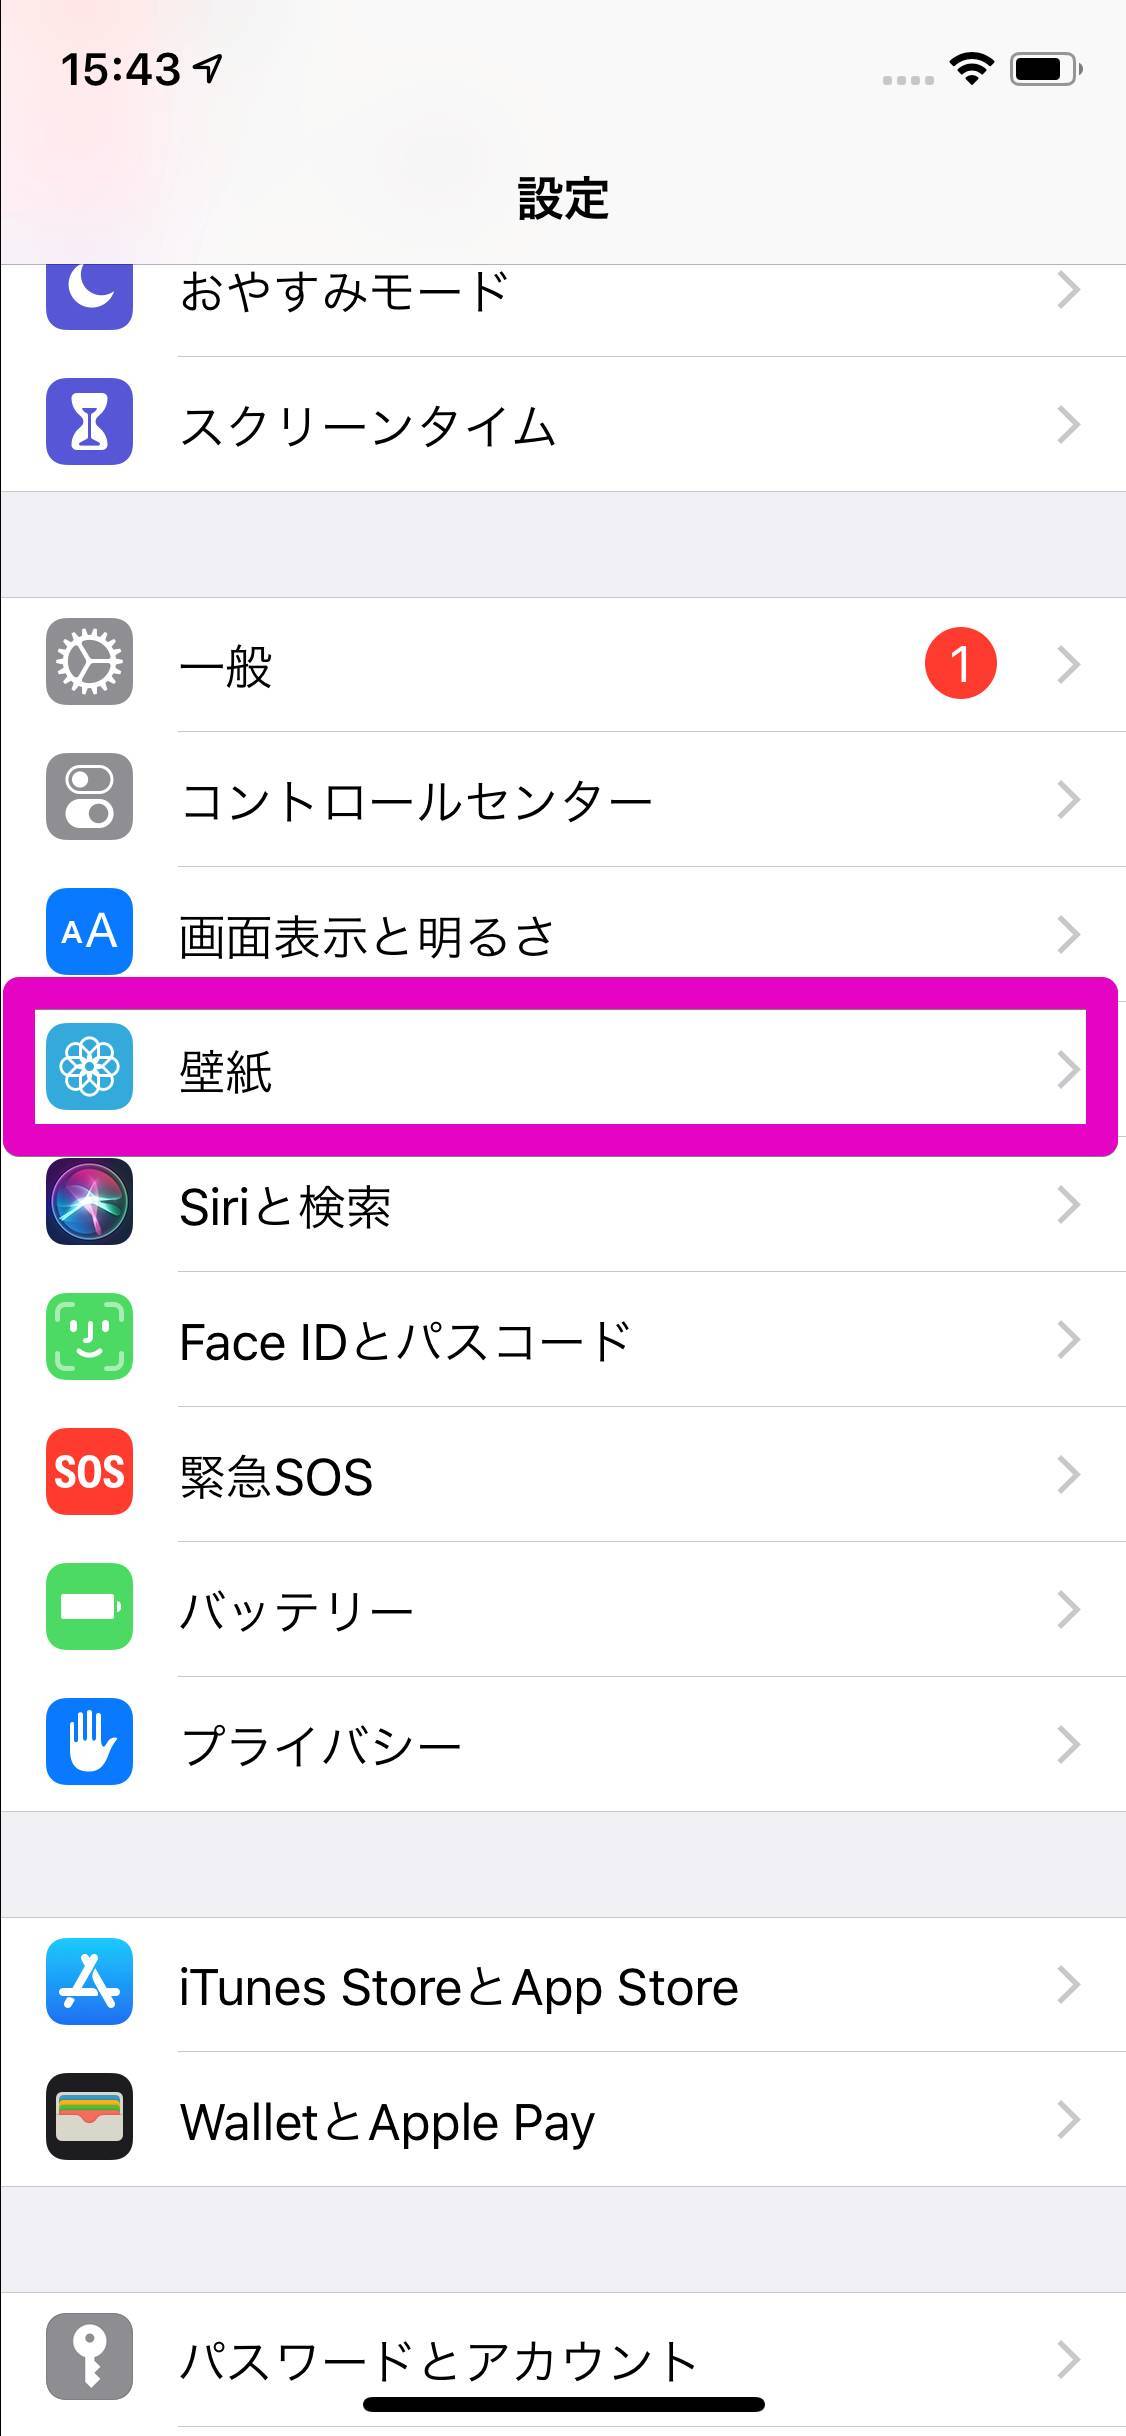 Iphoneのロック画面 ホーム画面の壁紙を変更する方法 Appliv Topics